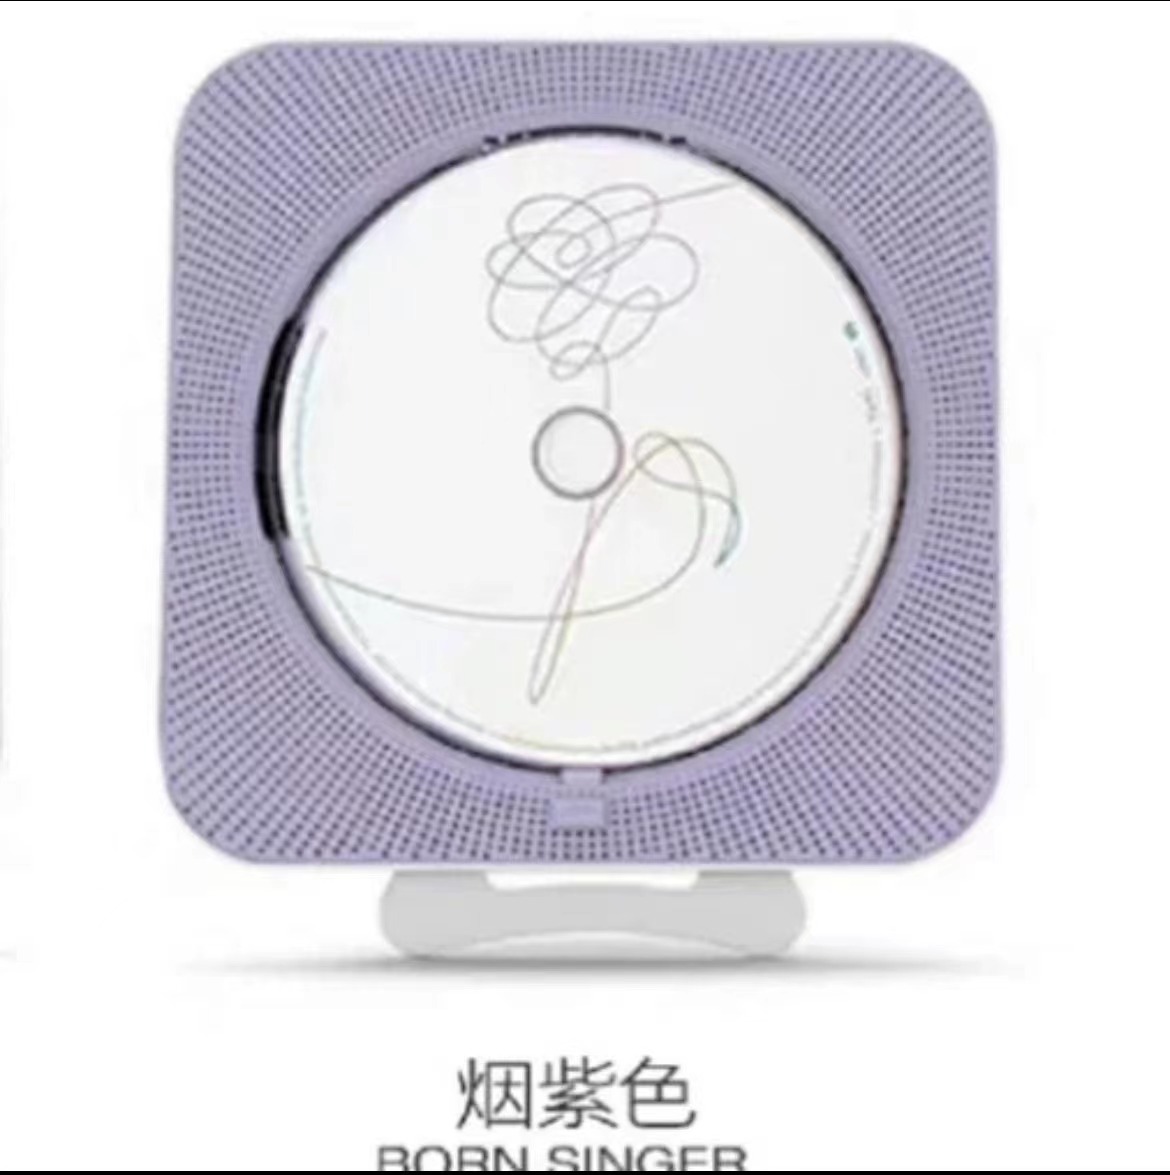 [定金 Set A 紫色 特典] Born Singer CD机SET _百度田柾国吧